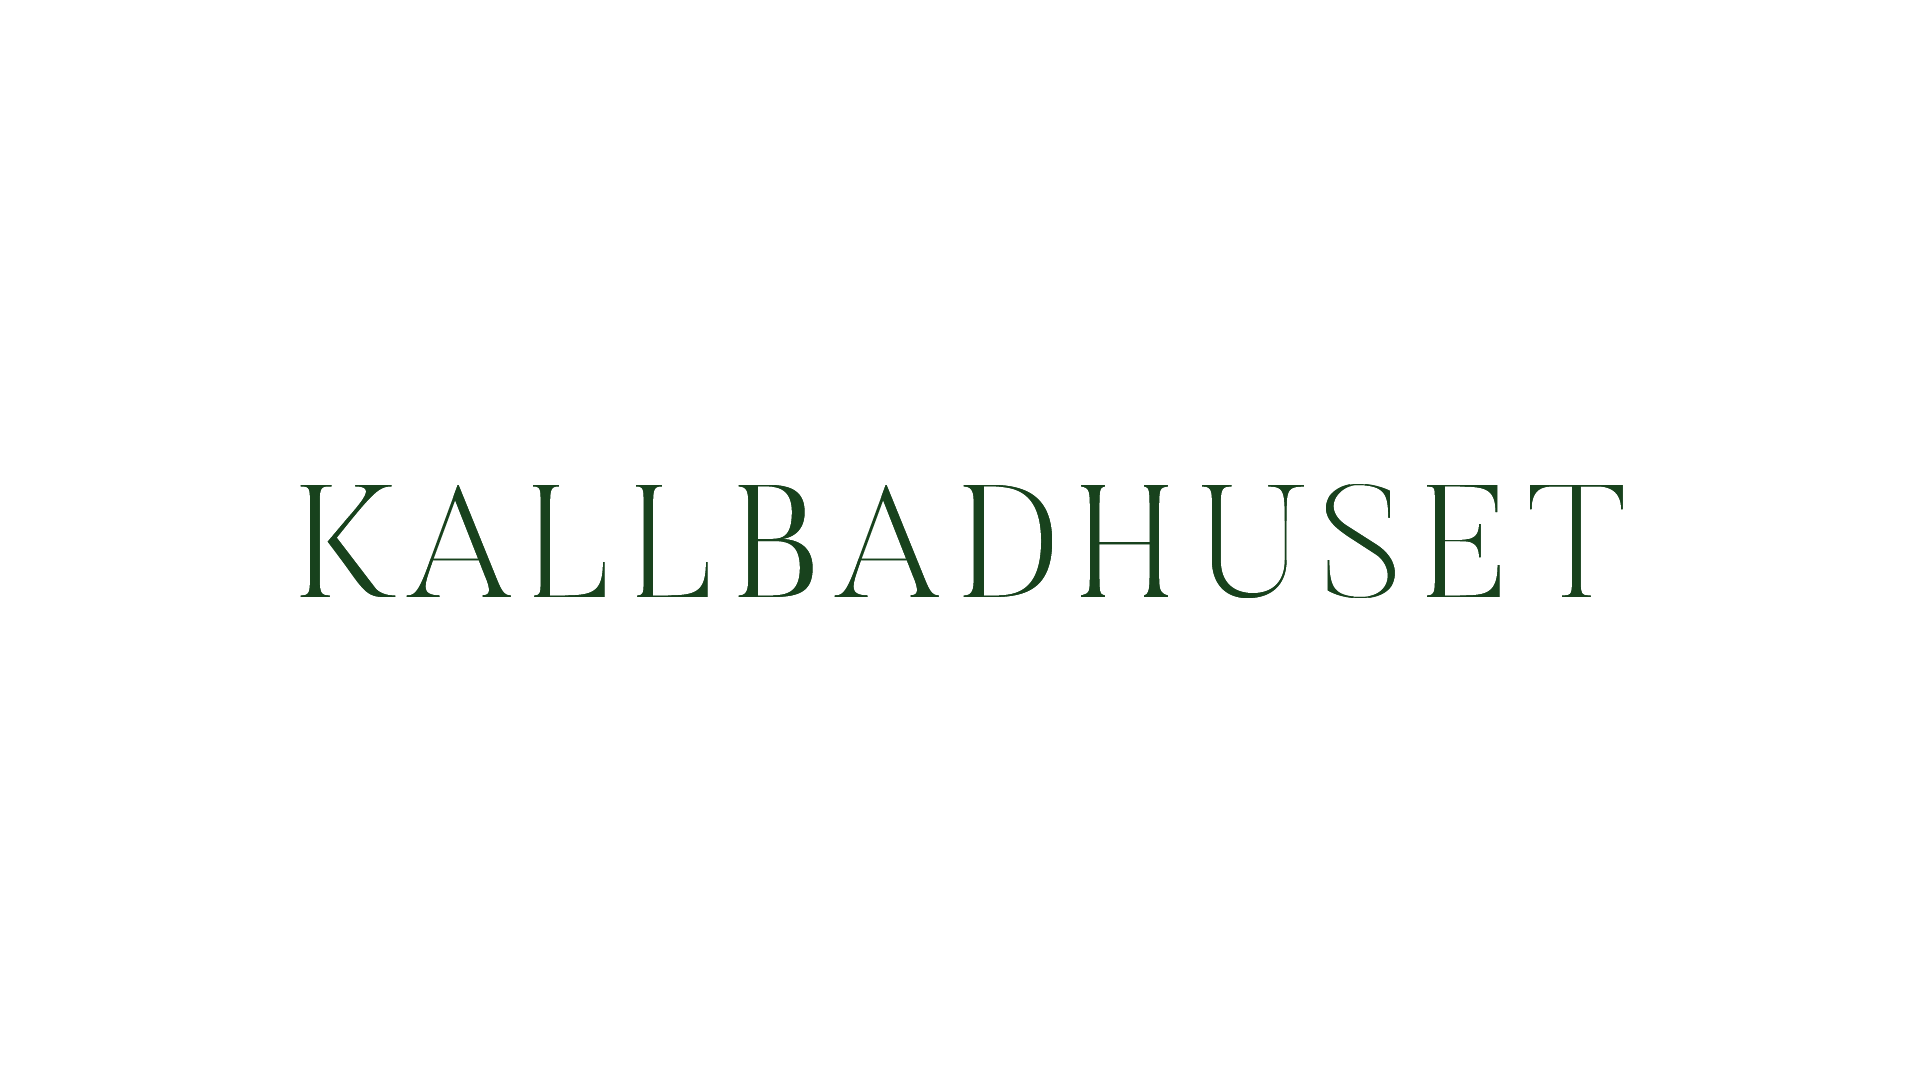 kallbadhuset-logo-animation-1